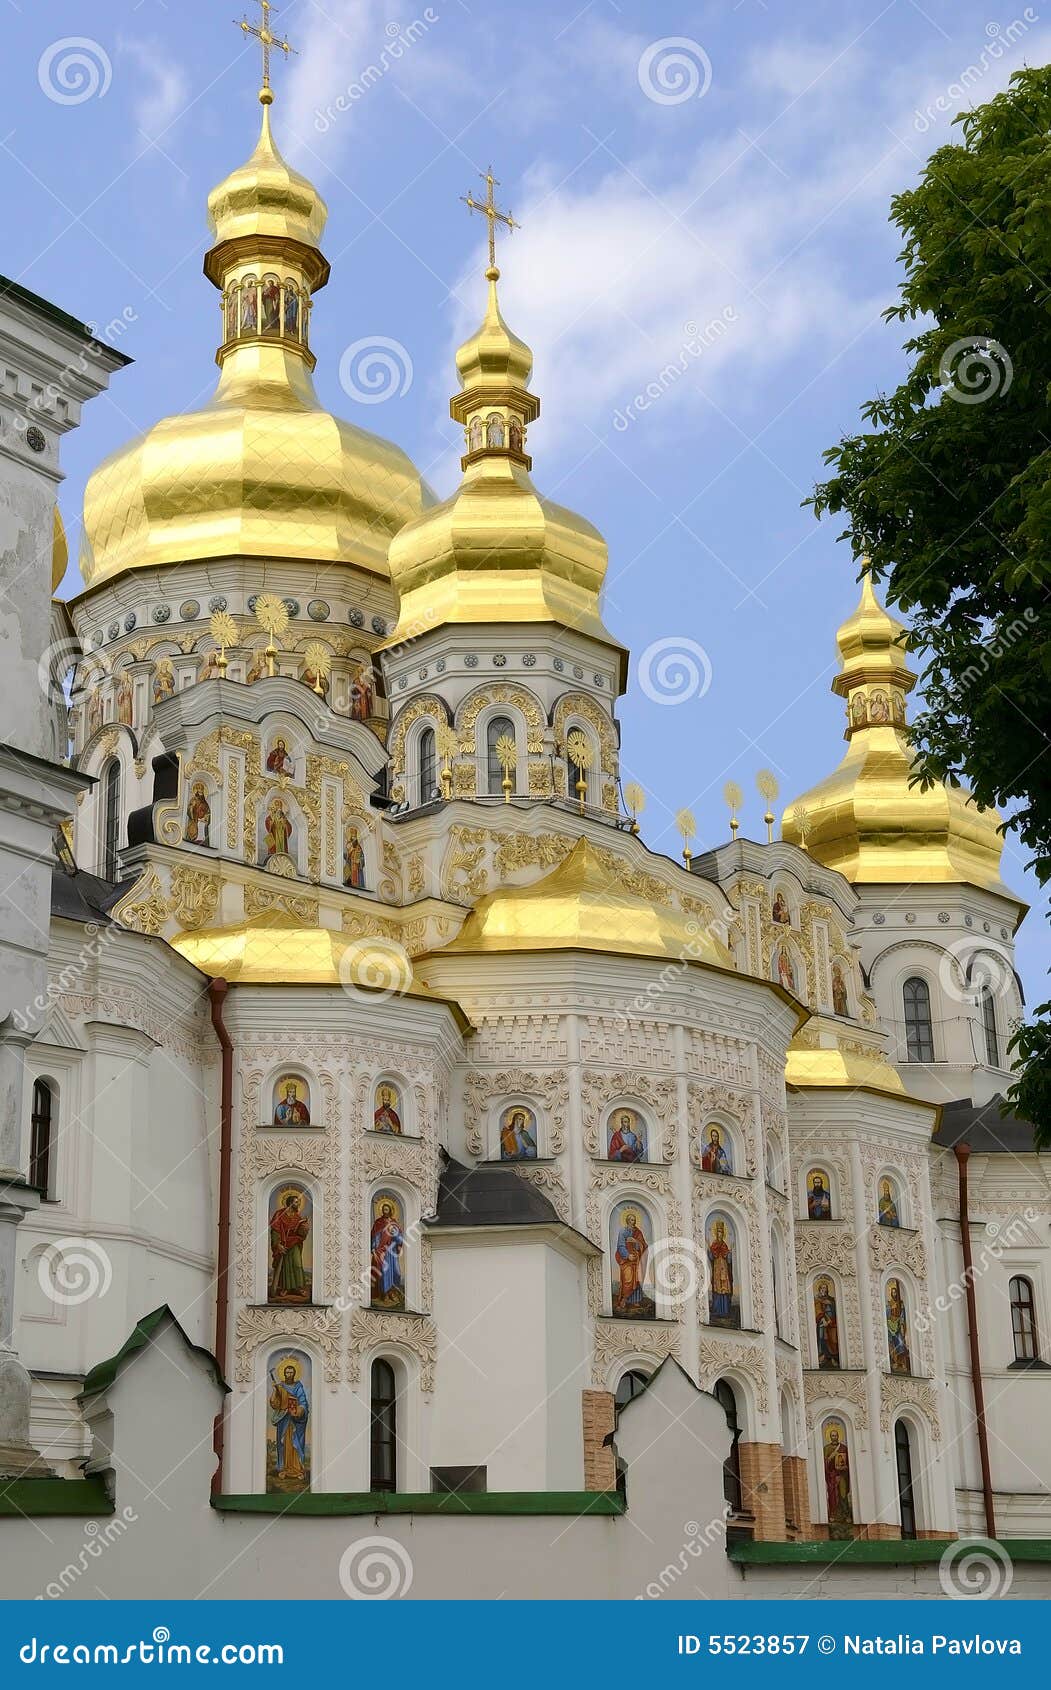 Katedralny dormition Kiev lavra pechersk Ukraine